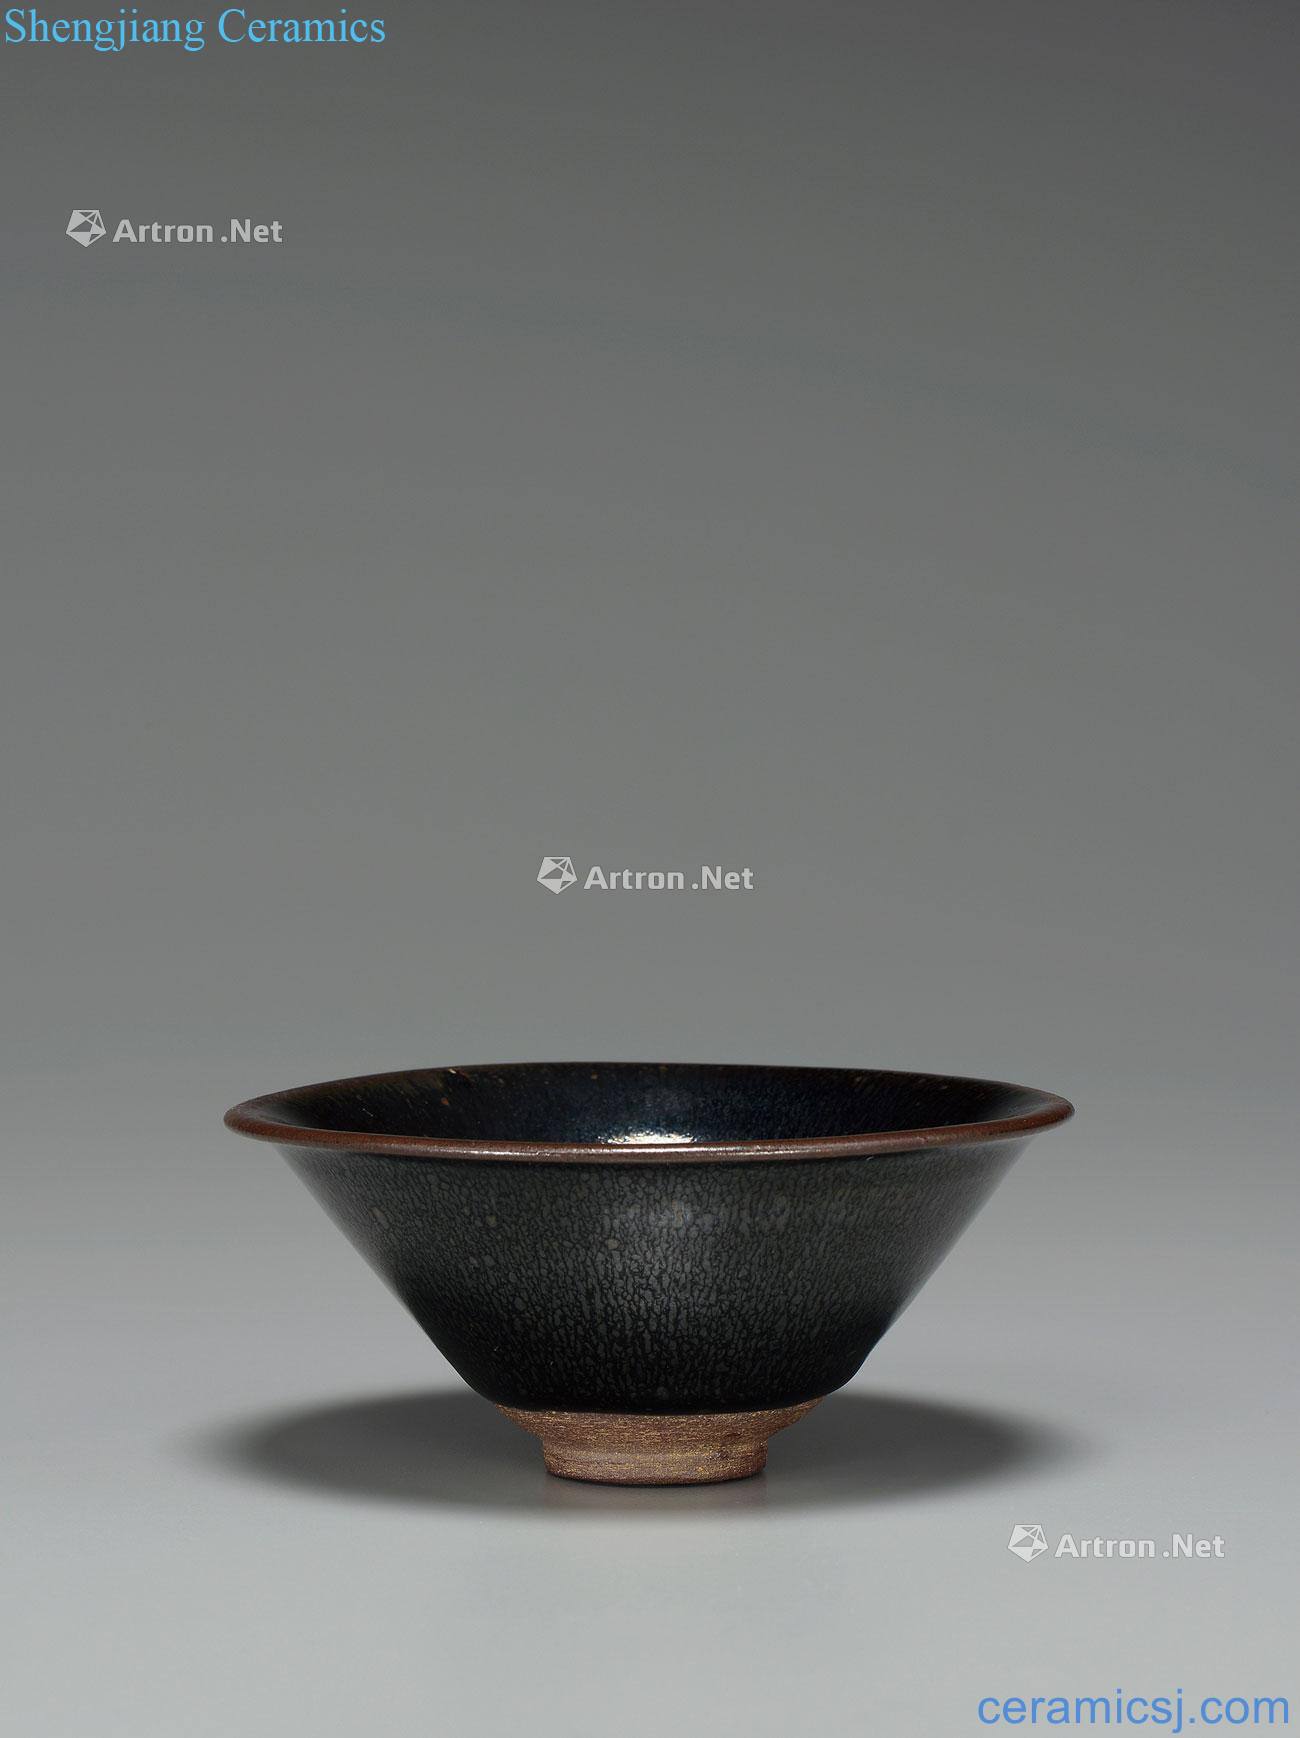 The song dynasty Jianyang kiln nano silver bowl